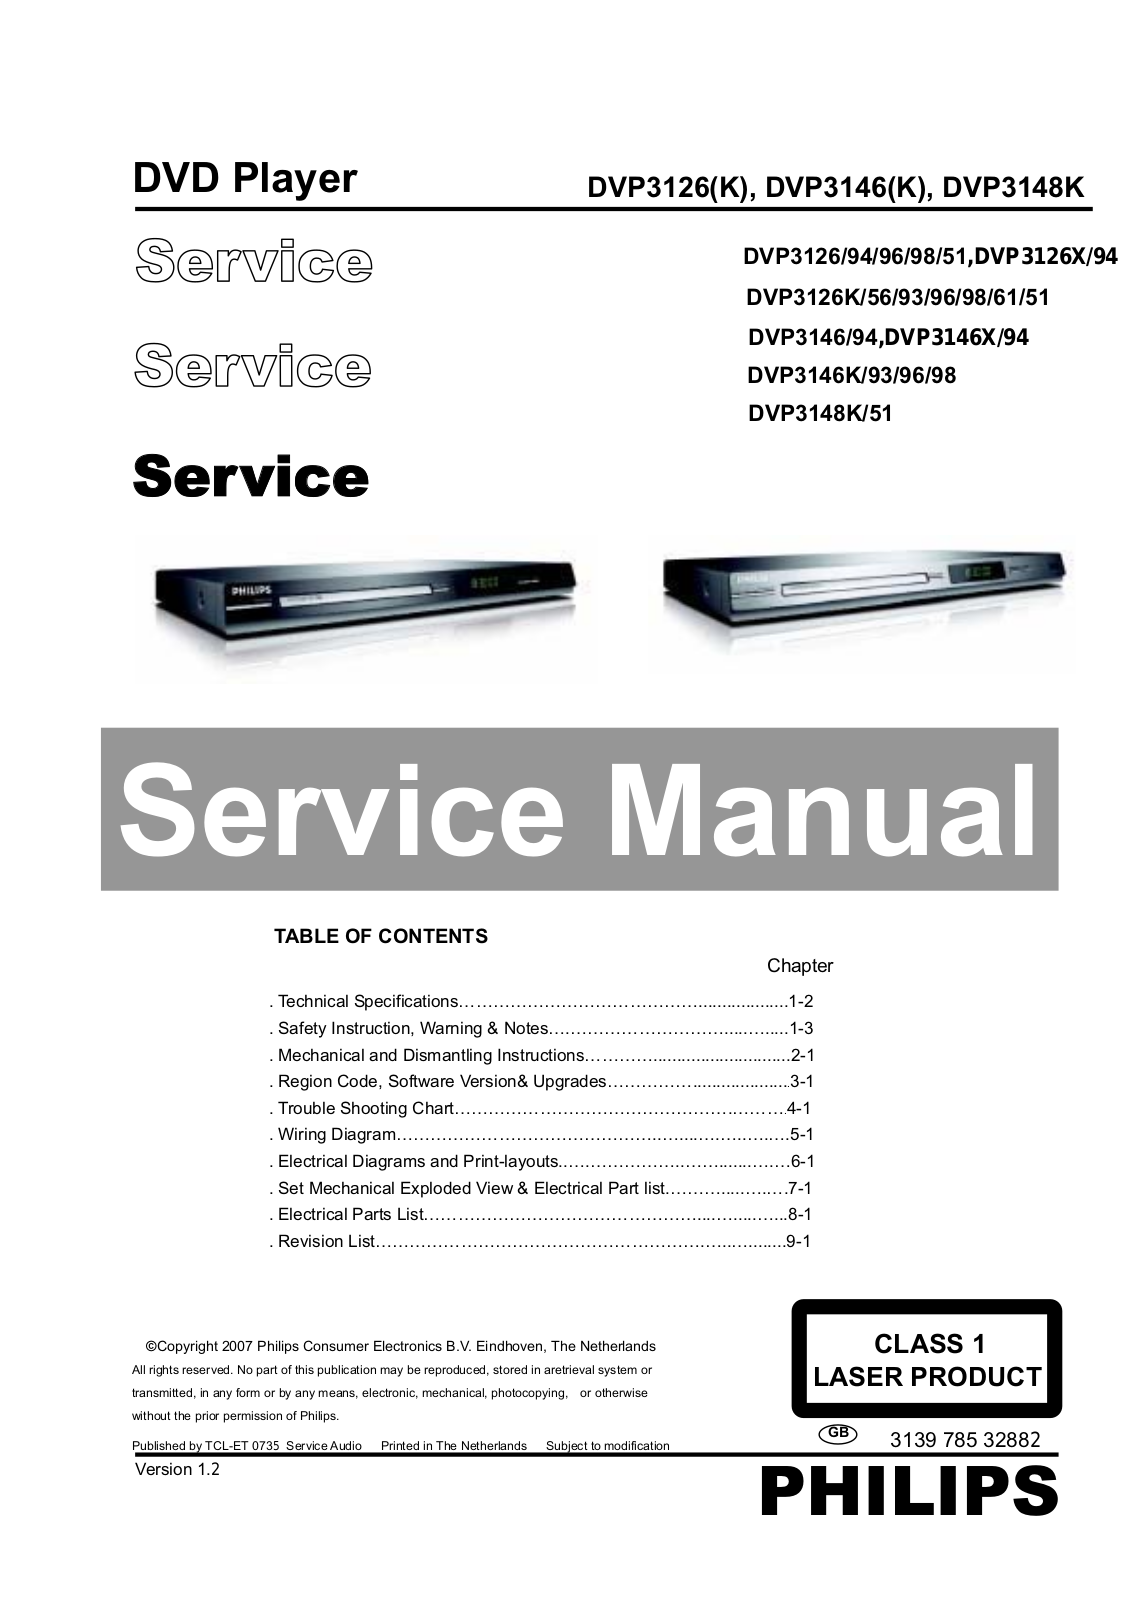 Philips DVP-3148-K, DVP-3146-X, DVP-3146-K, DVP-3146, DVP-3126-X Service Manual